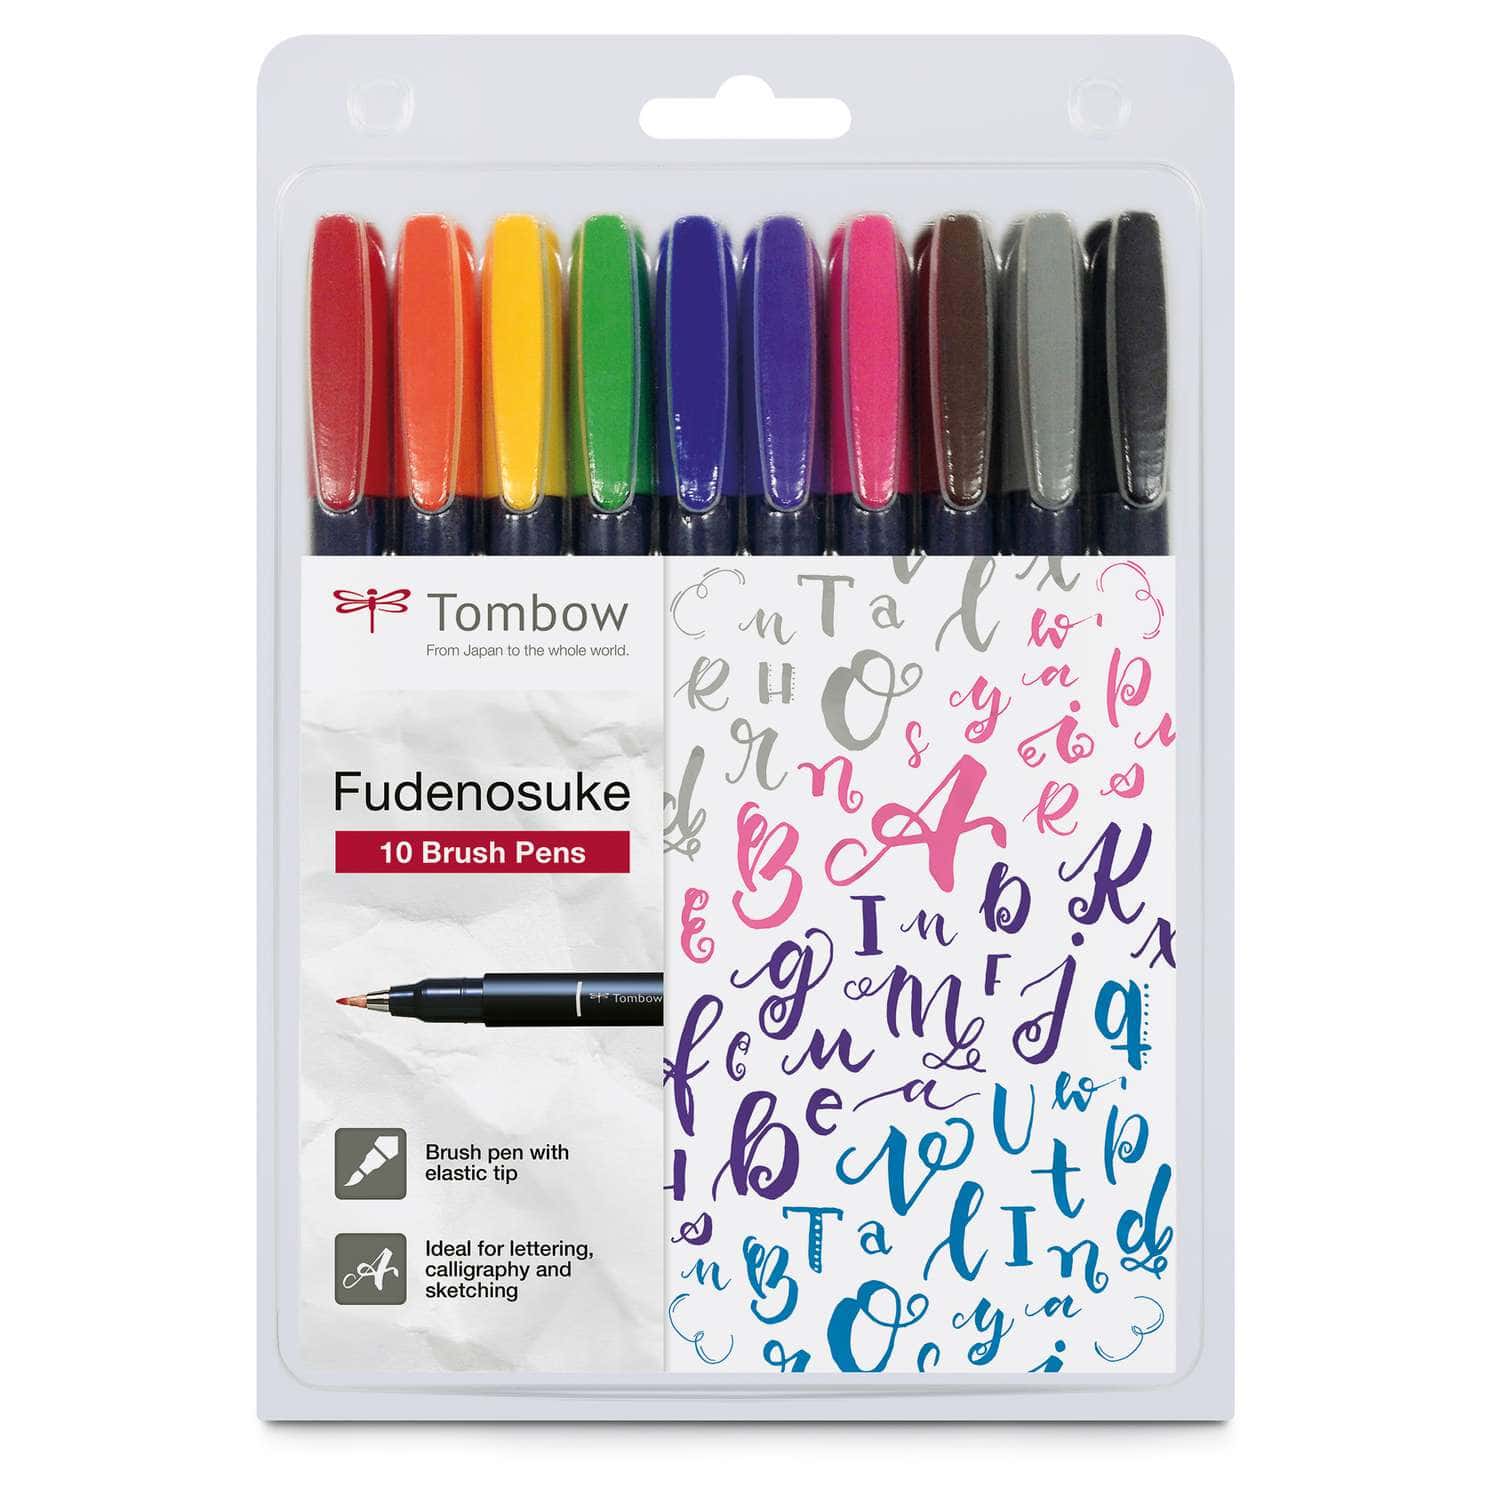 How to Use Tombow Fudenosuke Brush Pens 